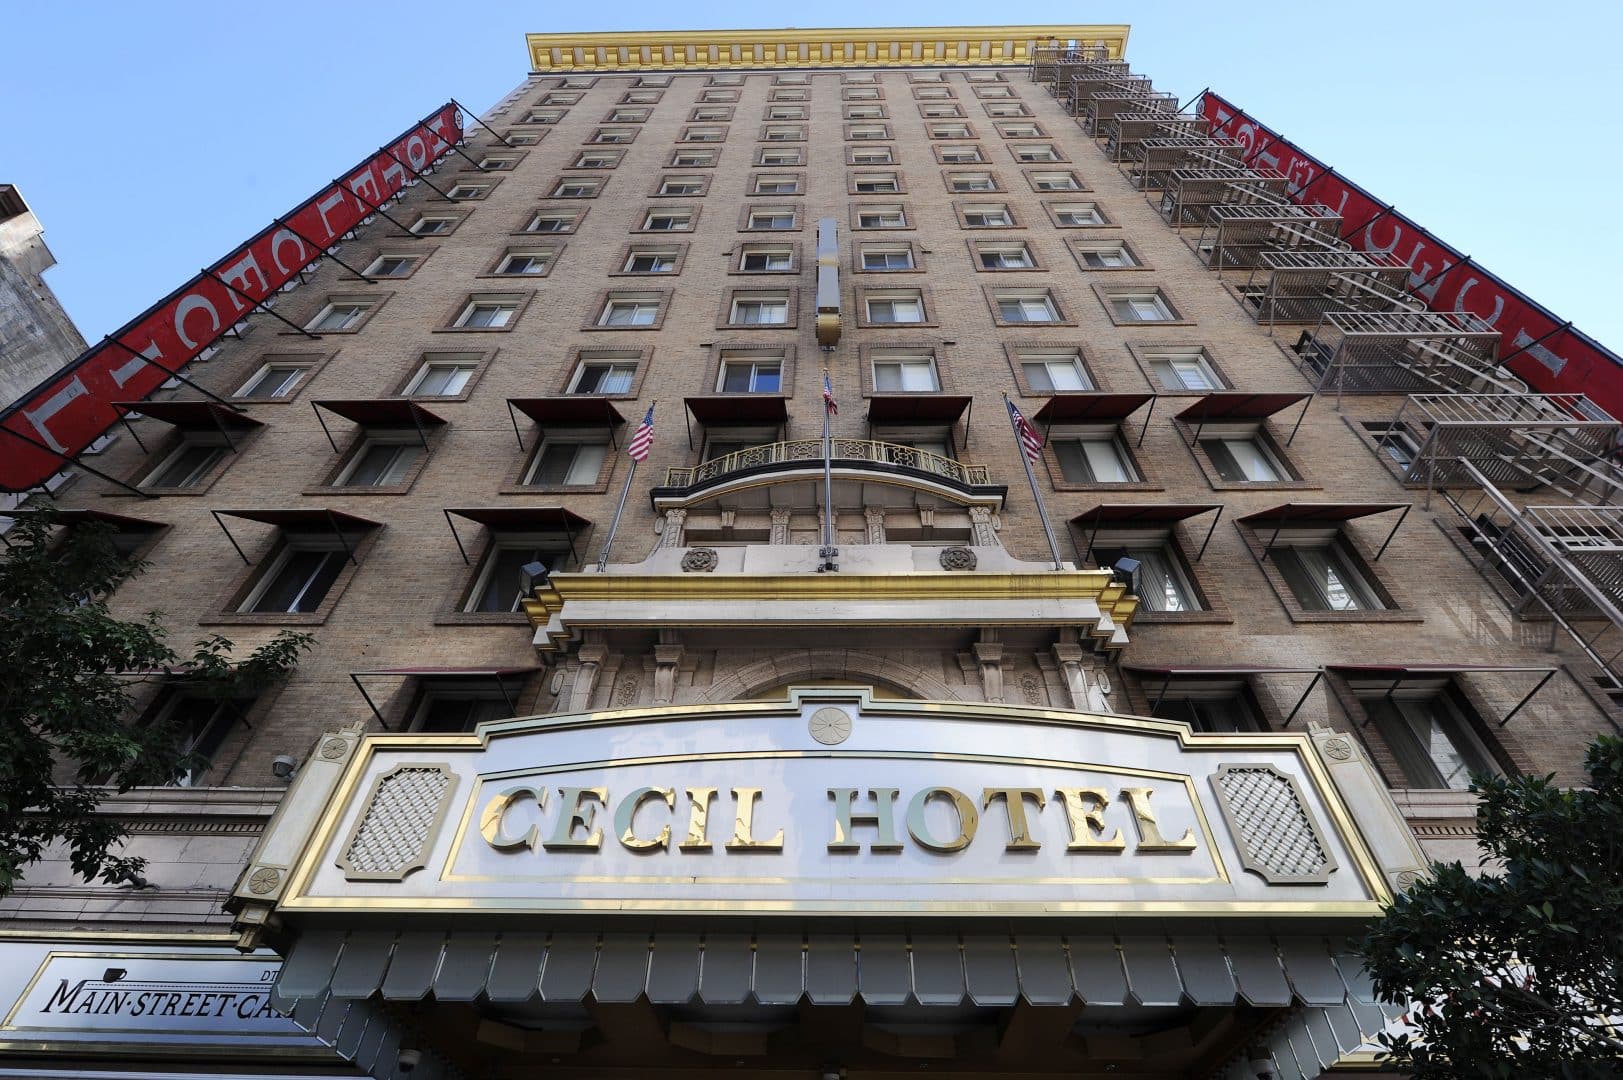 Cecil Hotel o que aconteceu com o famoso "hotel da morte"